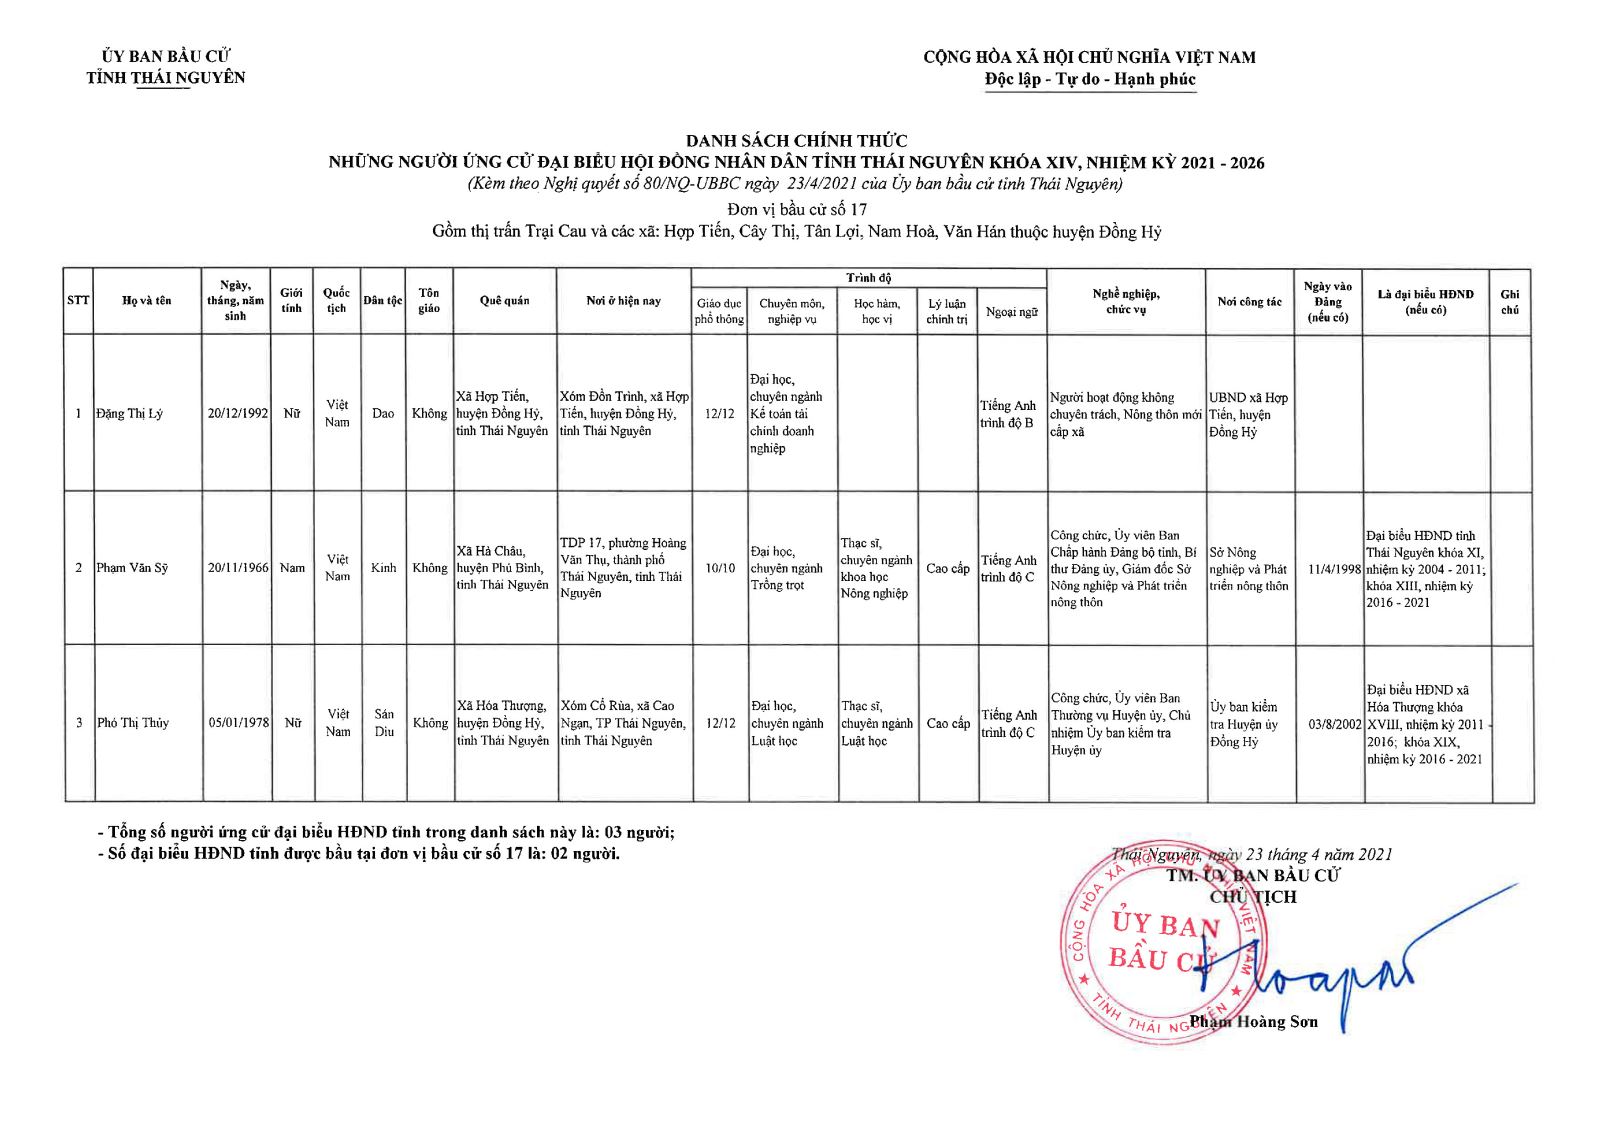 Danh sách chính thức những người ứng cử đại biểu Hội đồng nhân dân tỉnh Thái Nguyên khóa XIV, nhiệm kỳ 2021 - 2026 -2